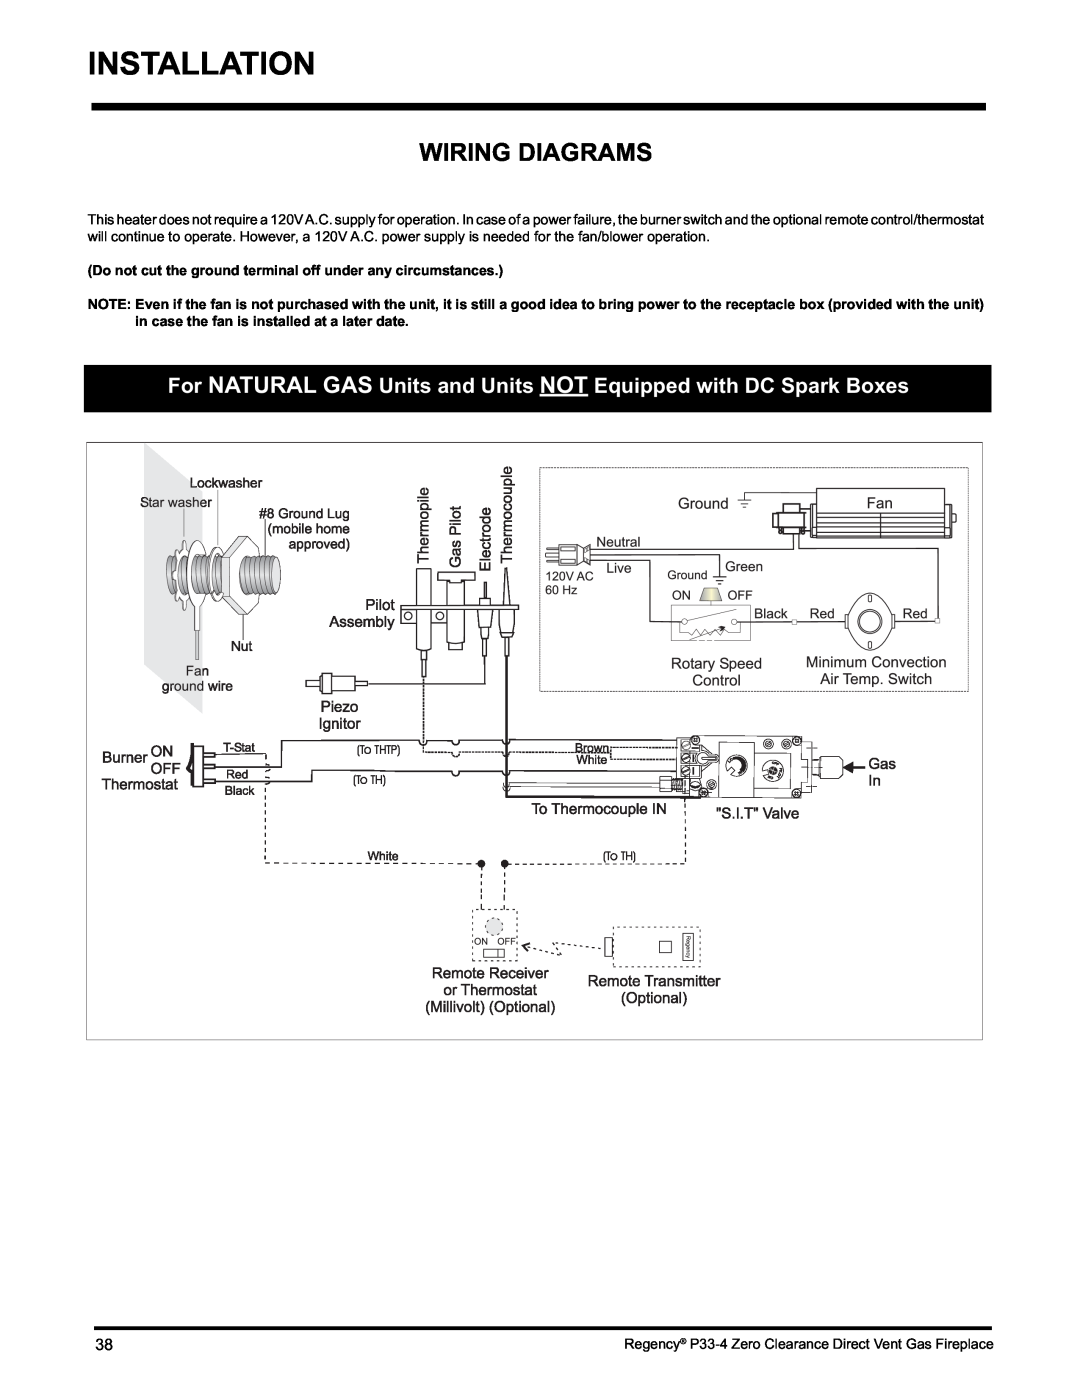 Regency P33-LP4 installation manual Installation, Wiring Diagrams 